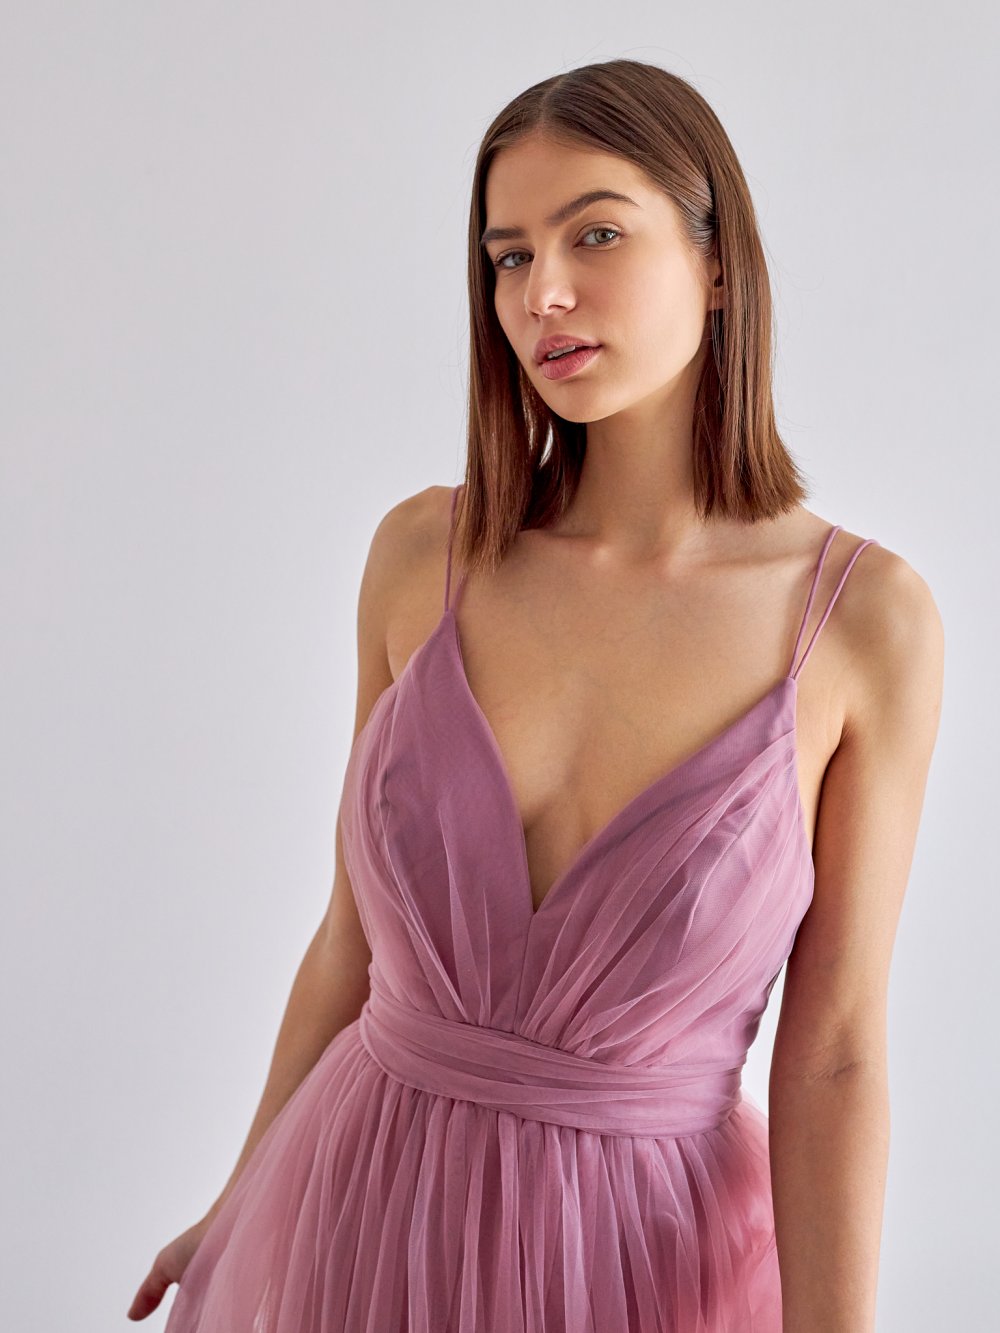 Fialovo-růžové tylové společenské šaty Polina